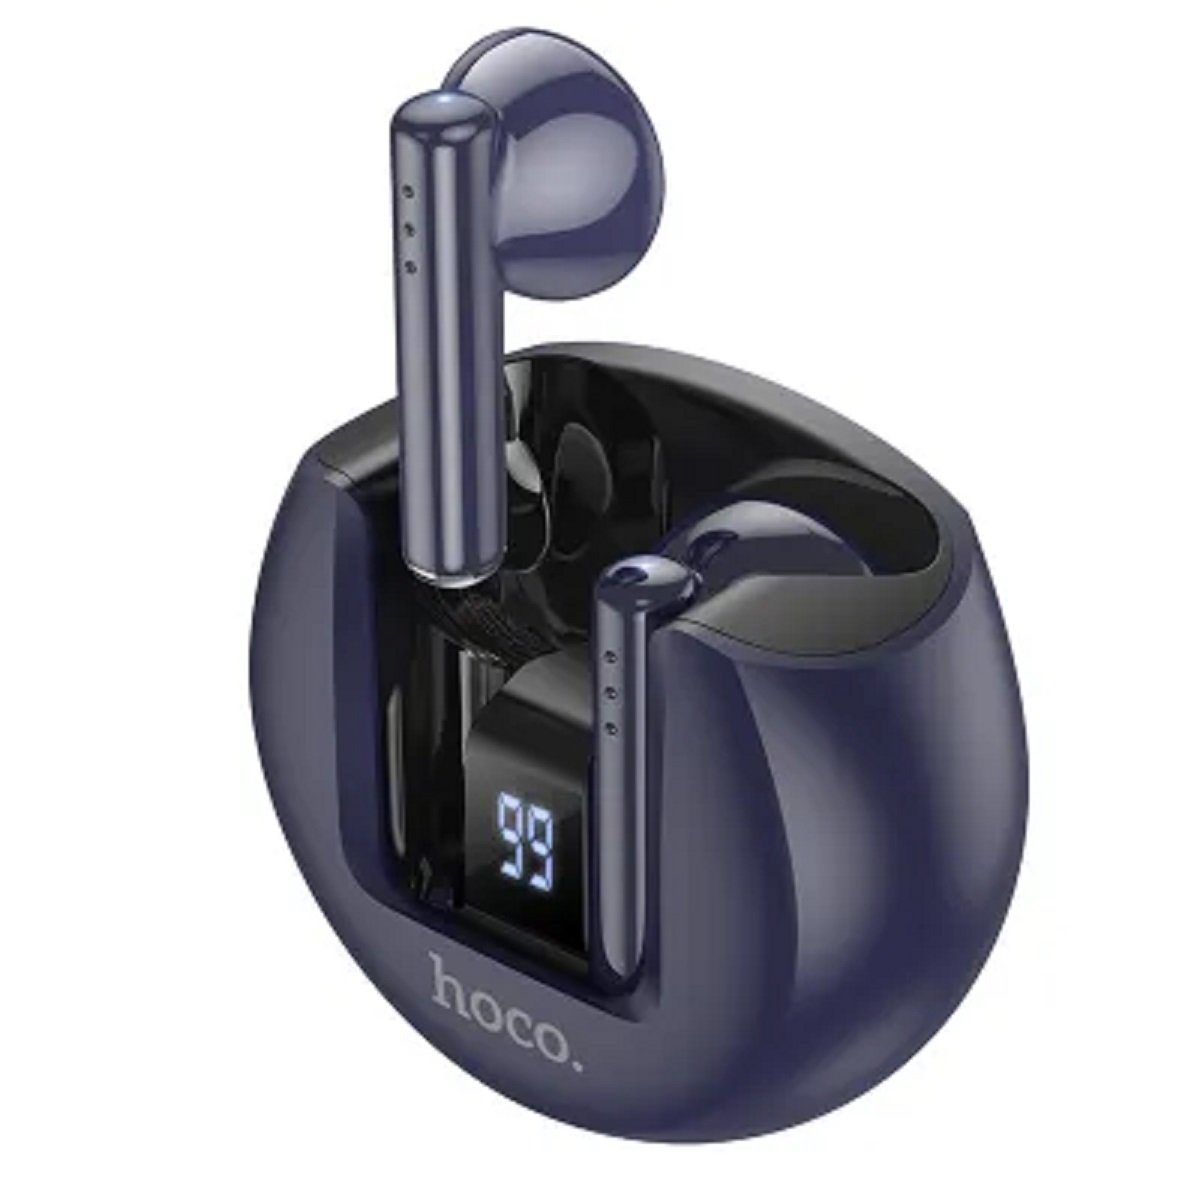 Bluetooth-Stereo-Kopfhörer wireless In-Ear-Kopfhörer HOCO / blau Sanfte kabellose